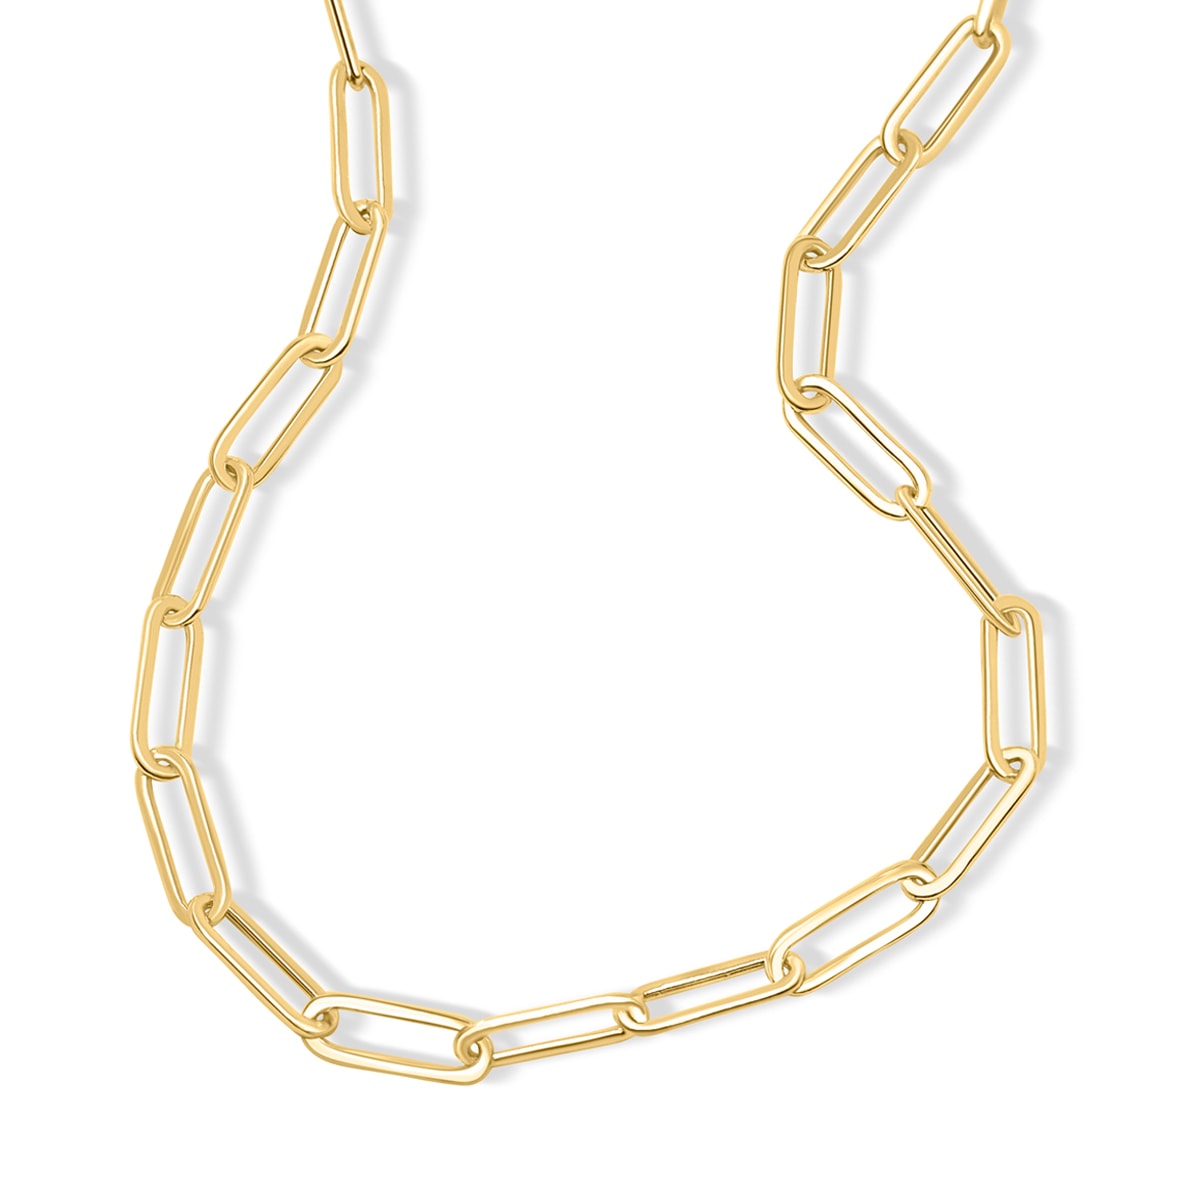 Unique paperclip chain link necklace